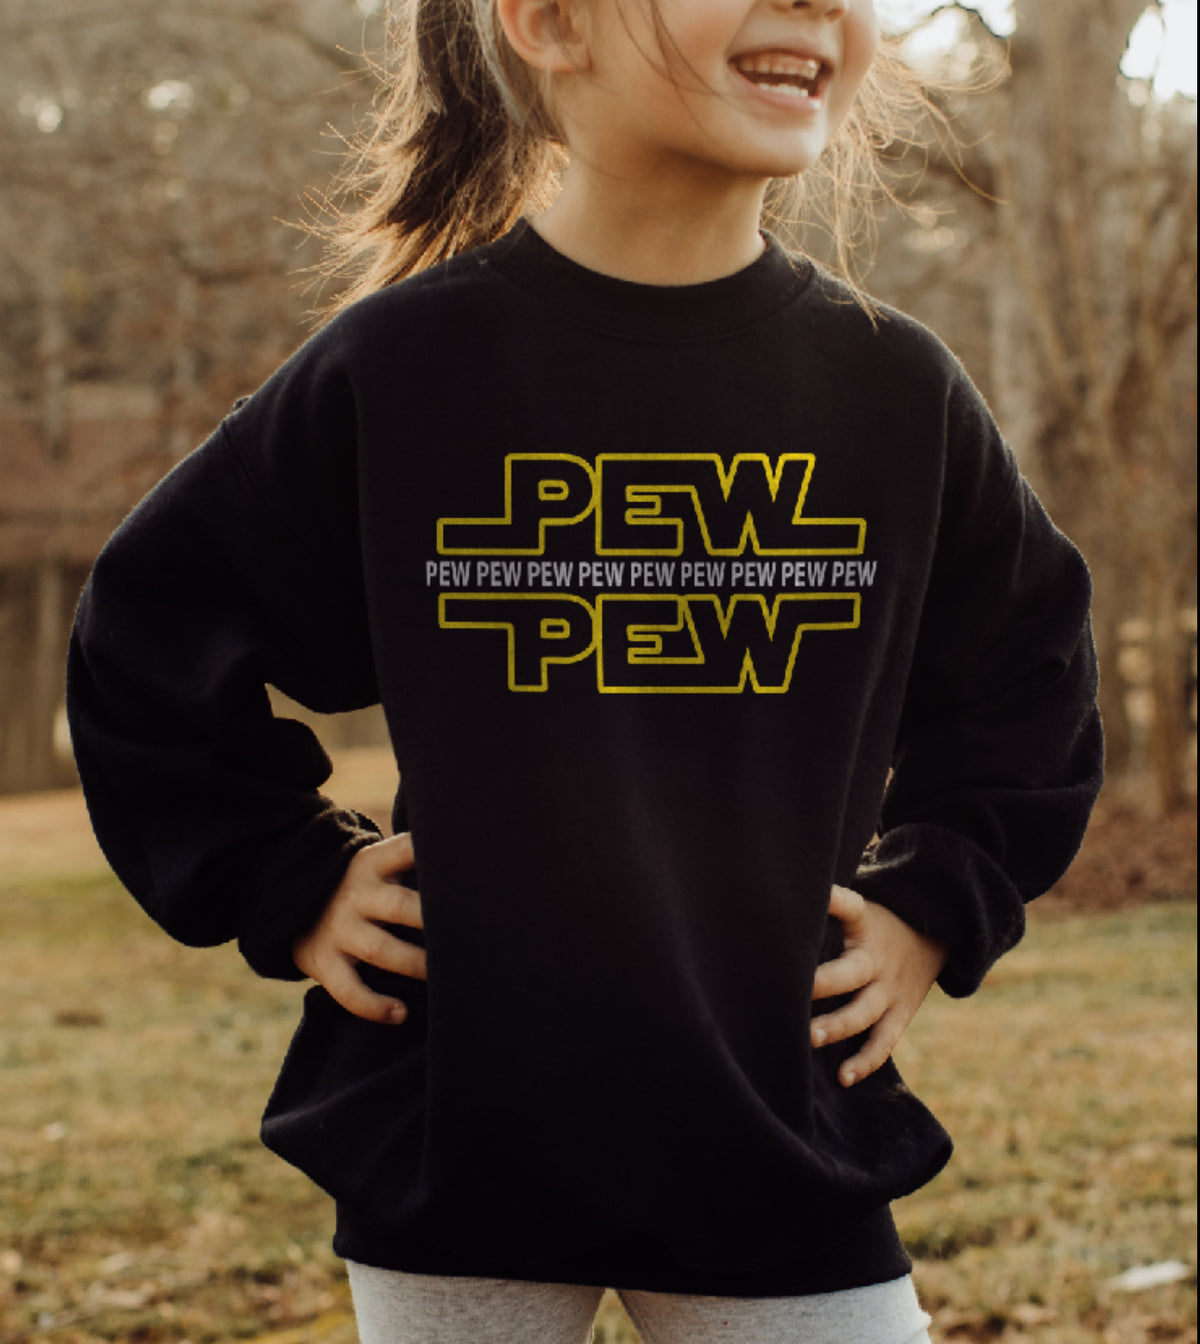 PEW PEW PEW Gildan Youth Crewneck Sweatshirt